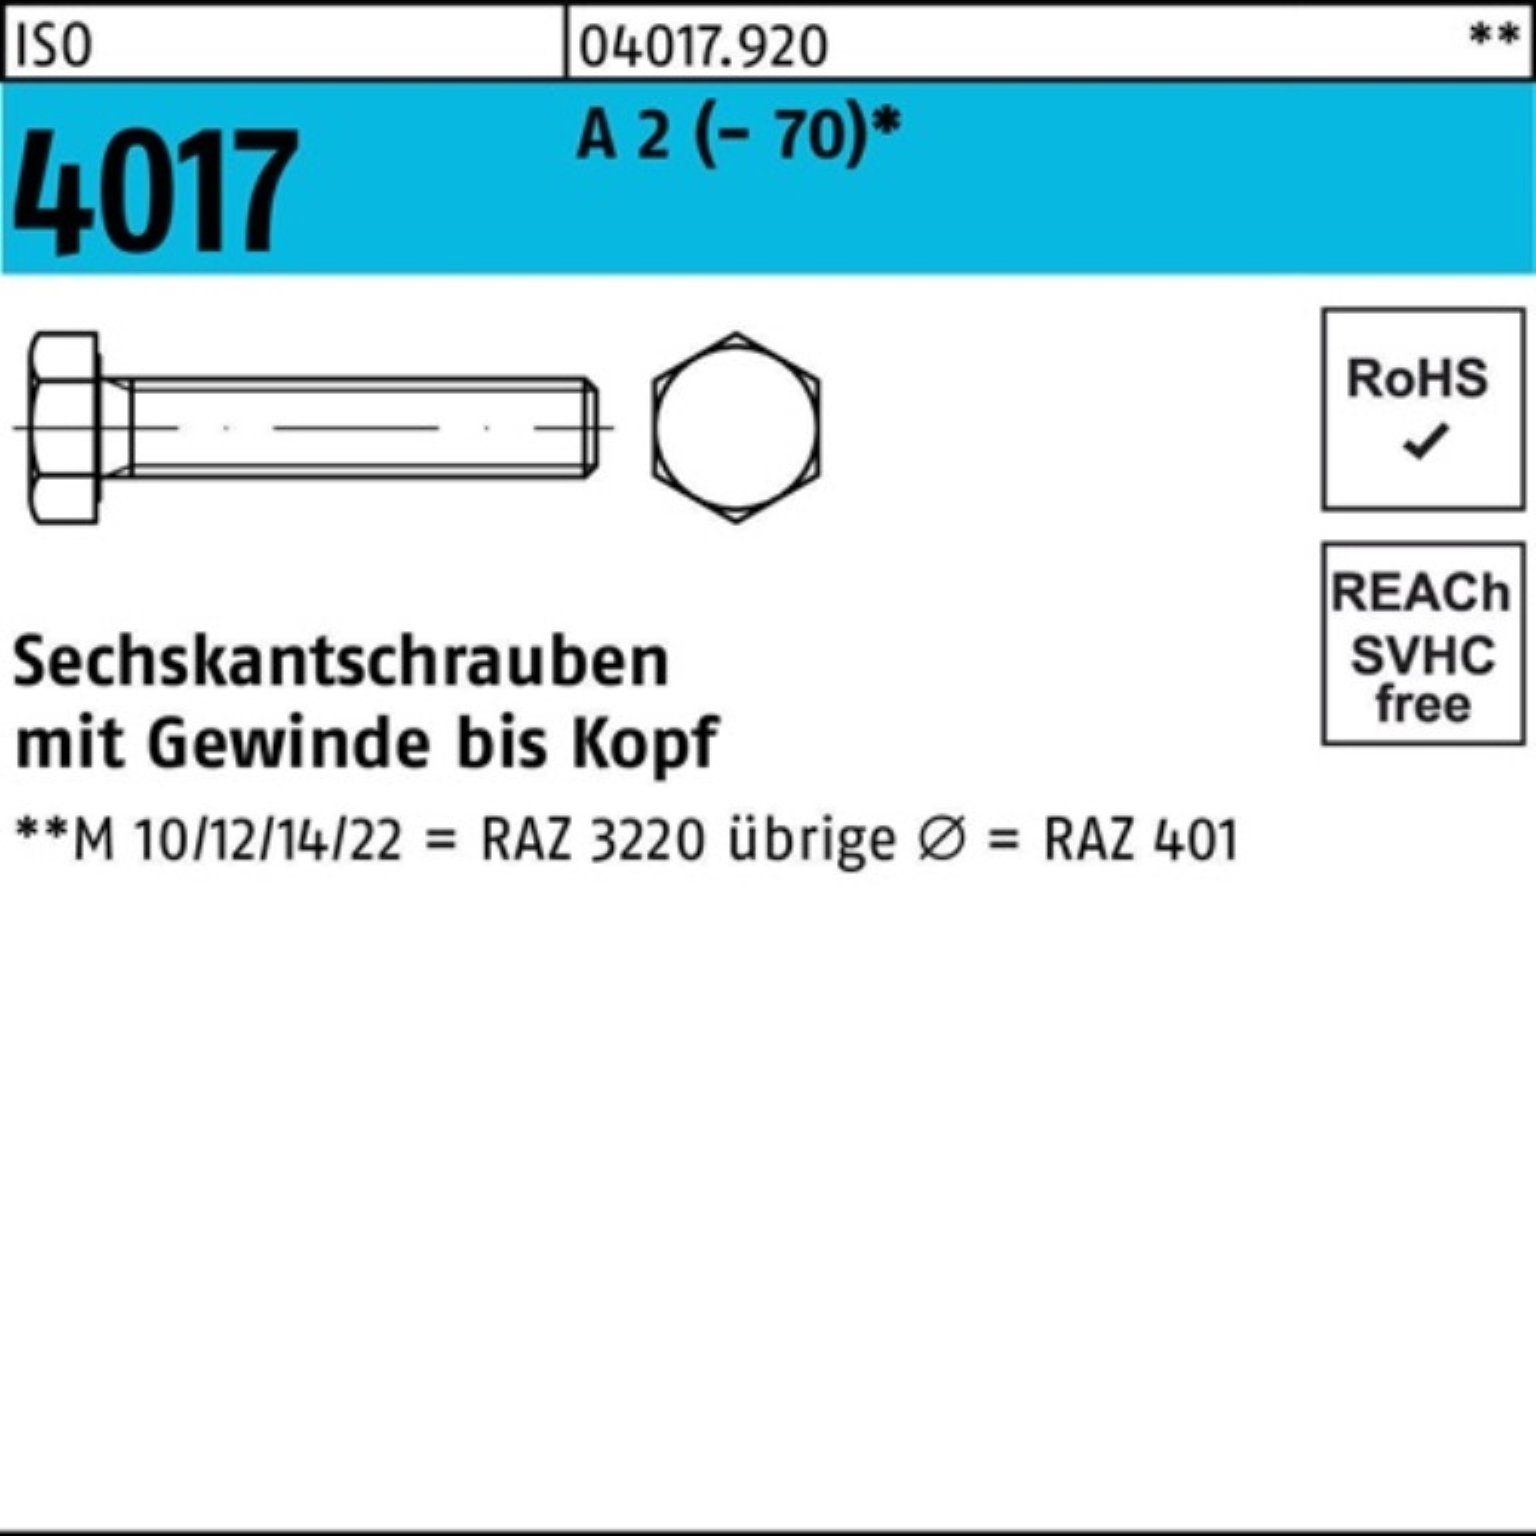 Bufab Sechskantschraube 100er Pack Sechskantschraube ISO 4017 VG M12x 140 A 2 (70) 1 Stück | Schrauben